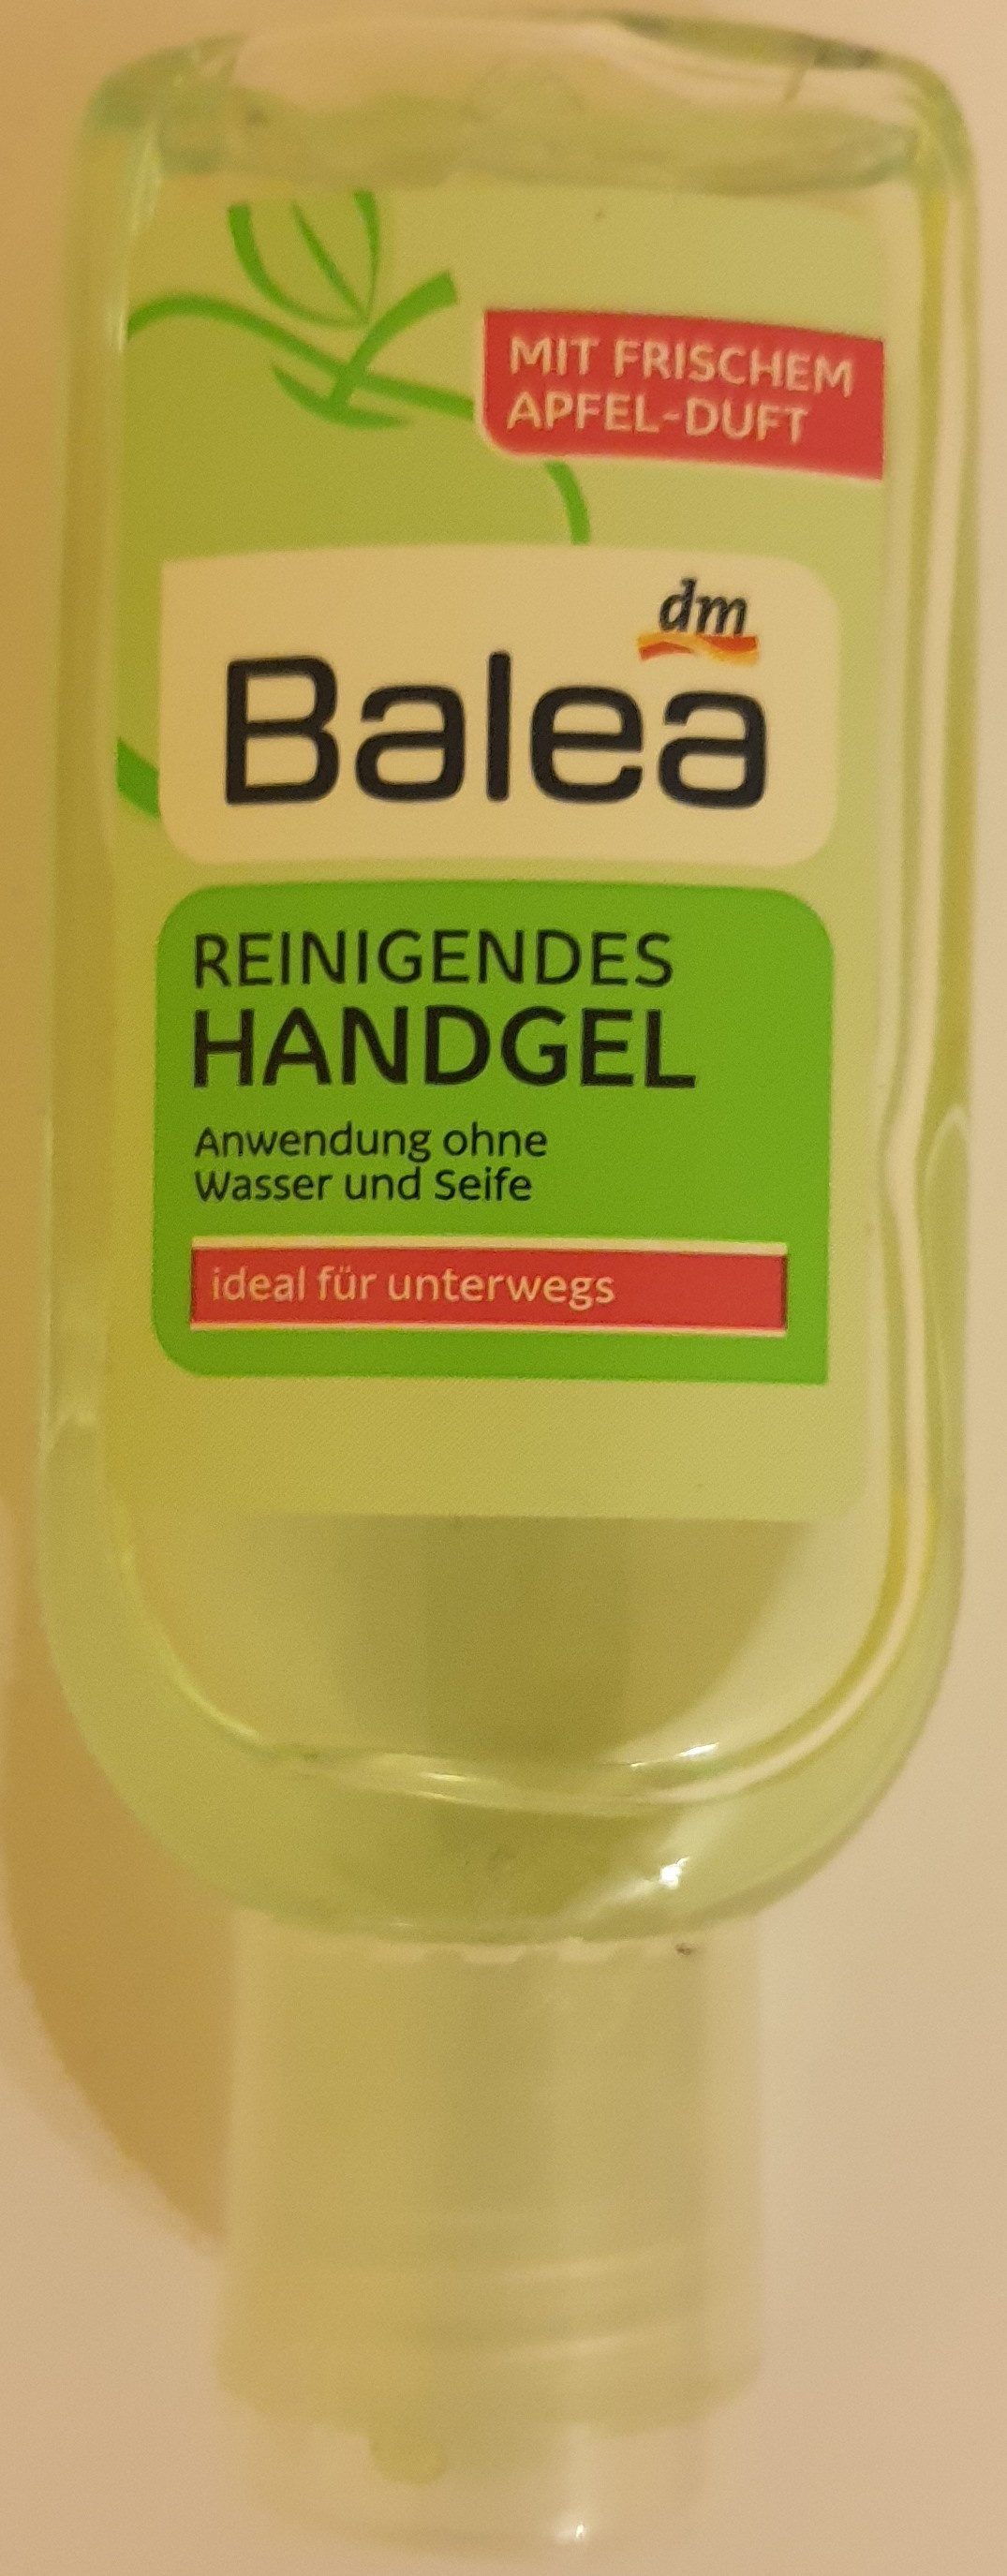 Reinigendes Handgel - Produit - de